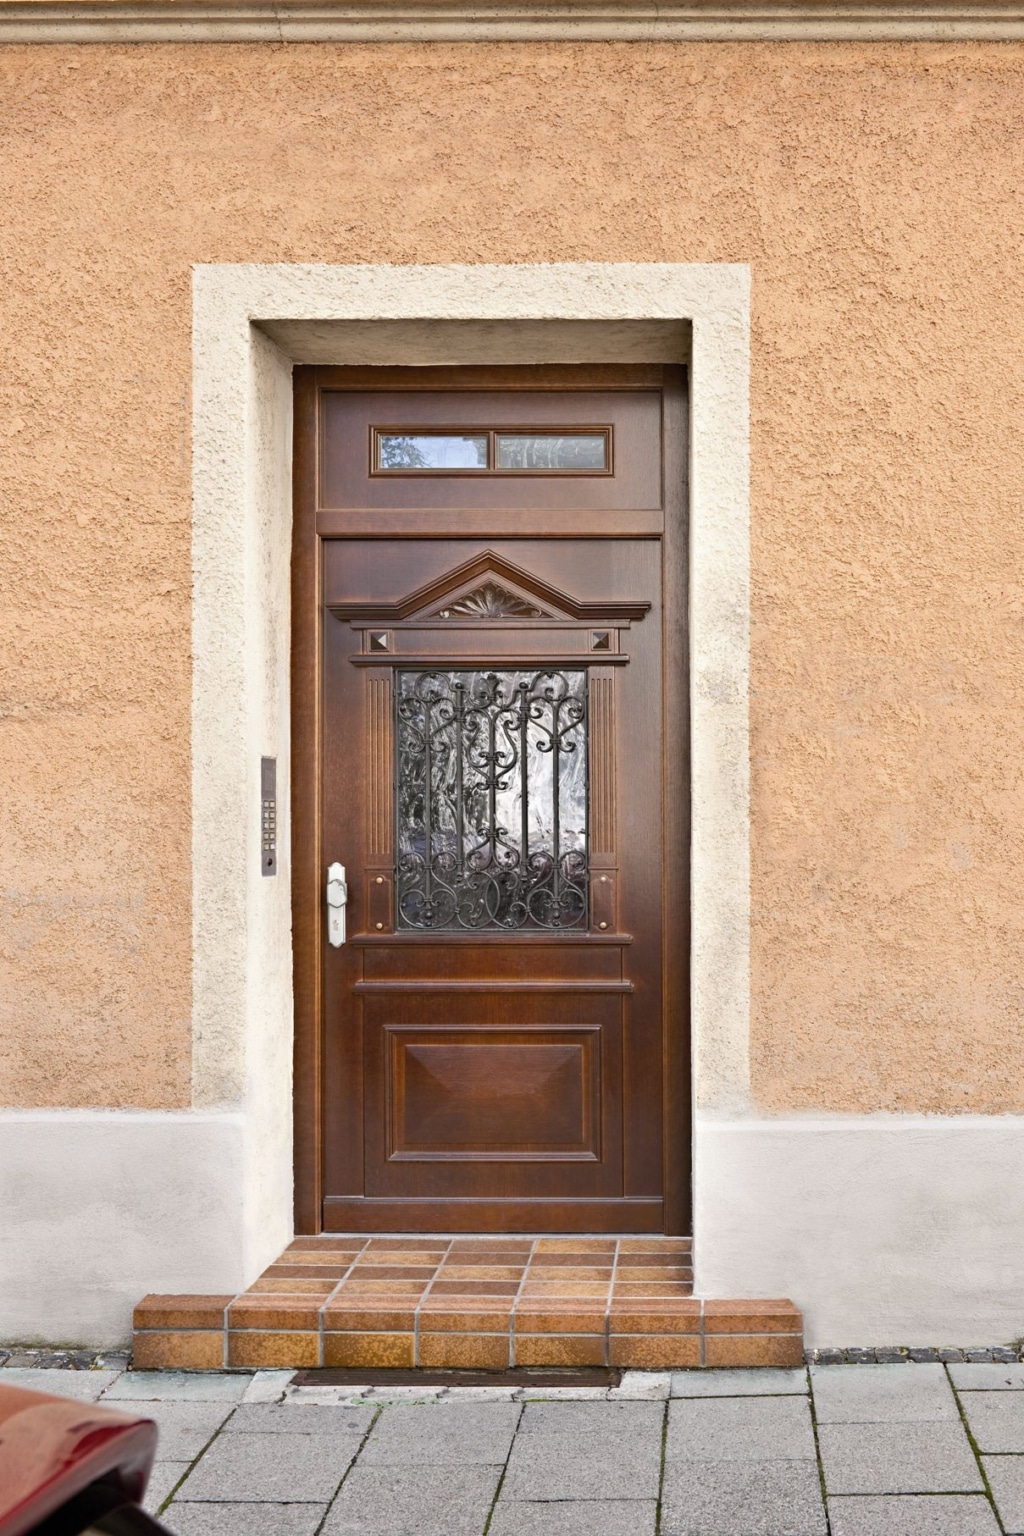 Zimmertüren im Überblick – Aufbau von Innentüren